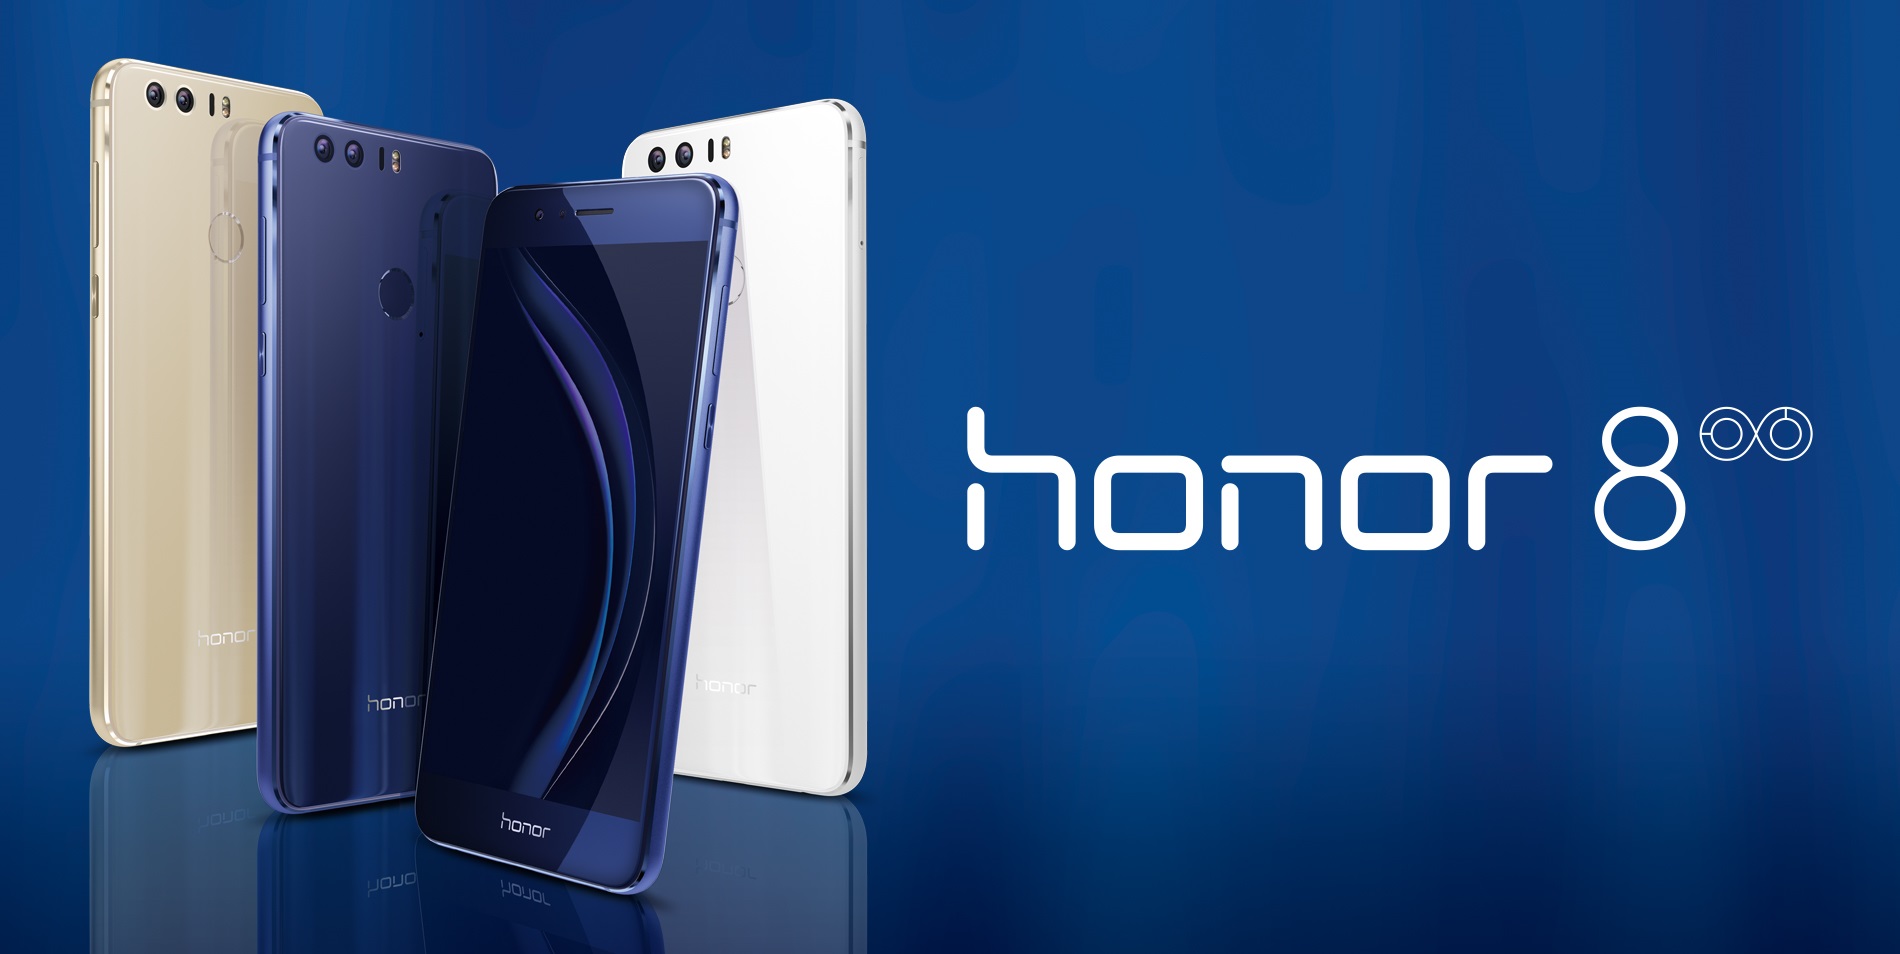 楽天が「honor 8」を国内独占販売 - Mobile